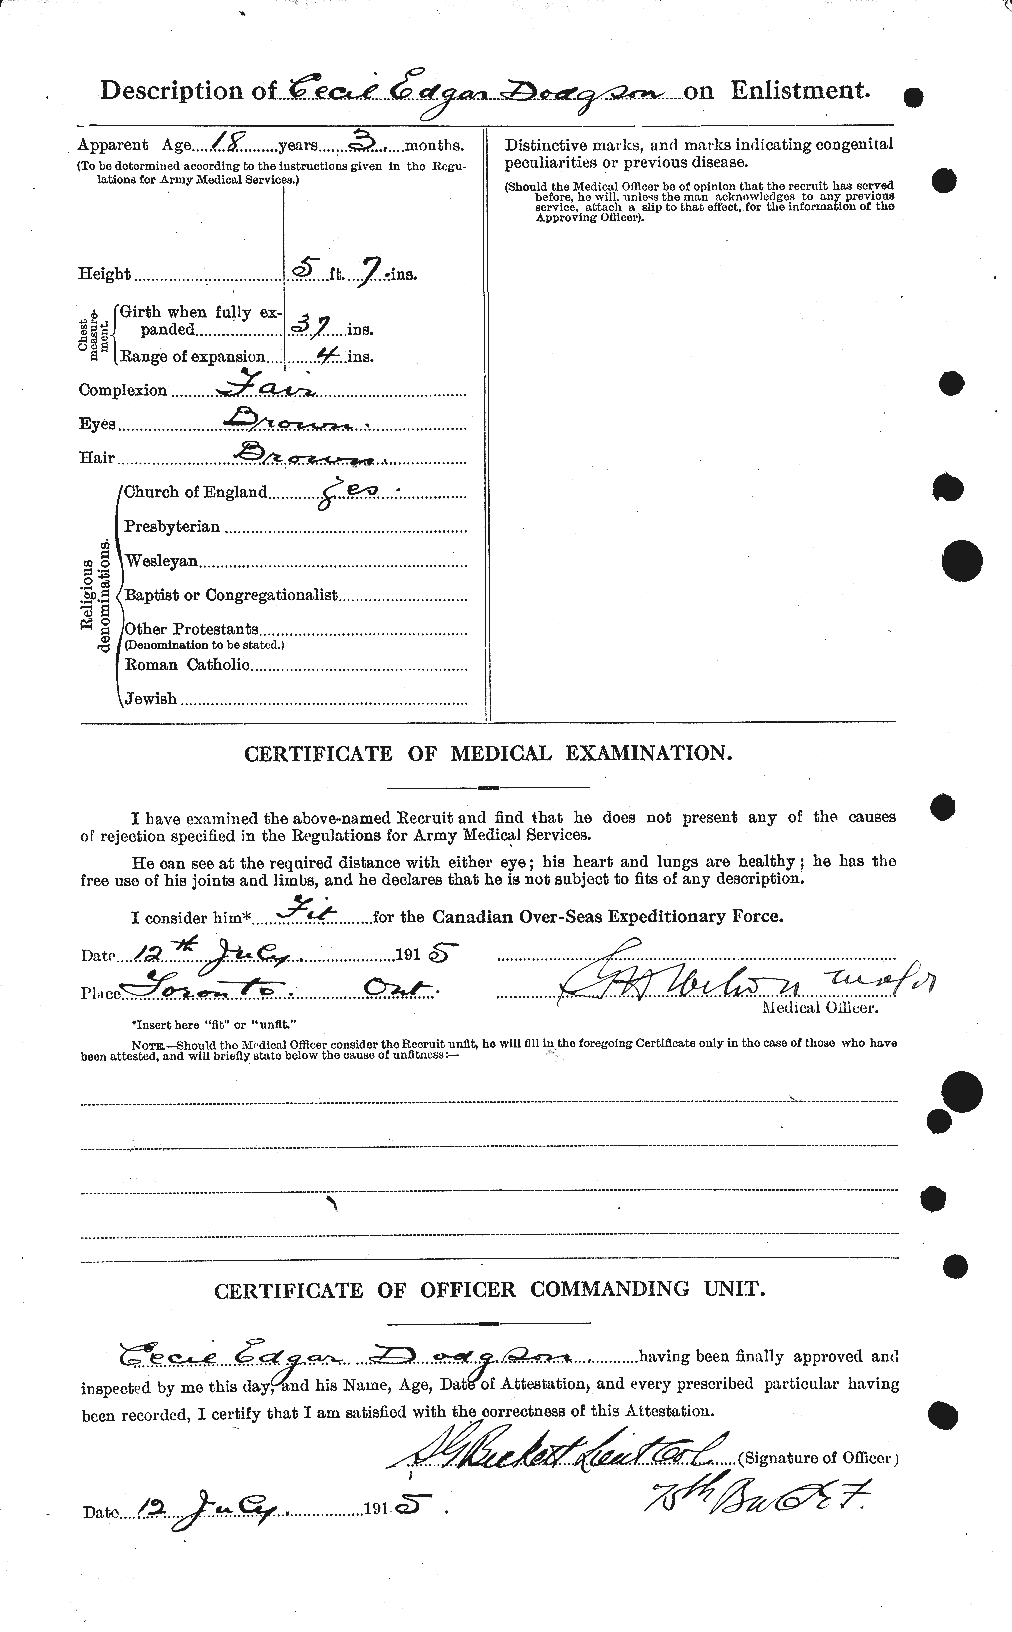 Dossiers du Personnel de la Première Guerre mondiale - CEC 294495b